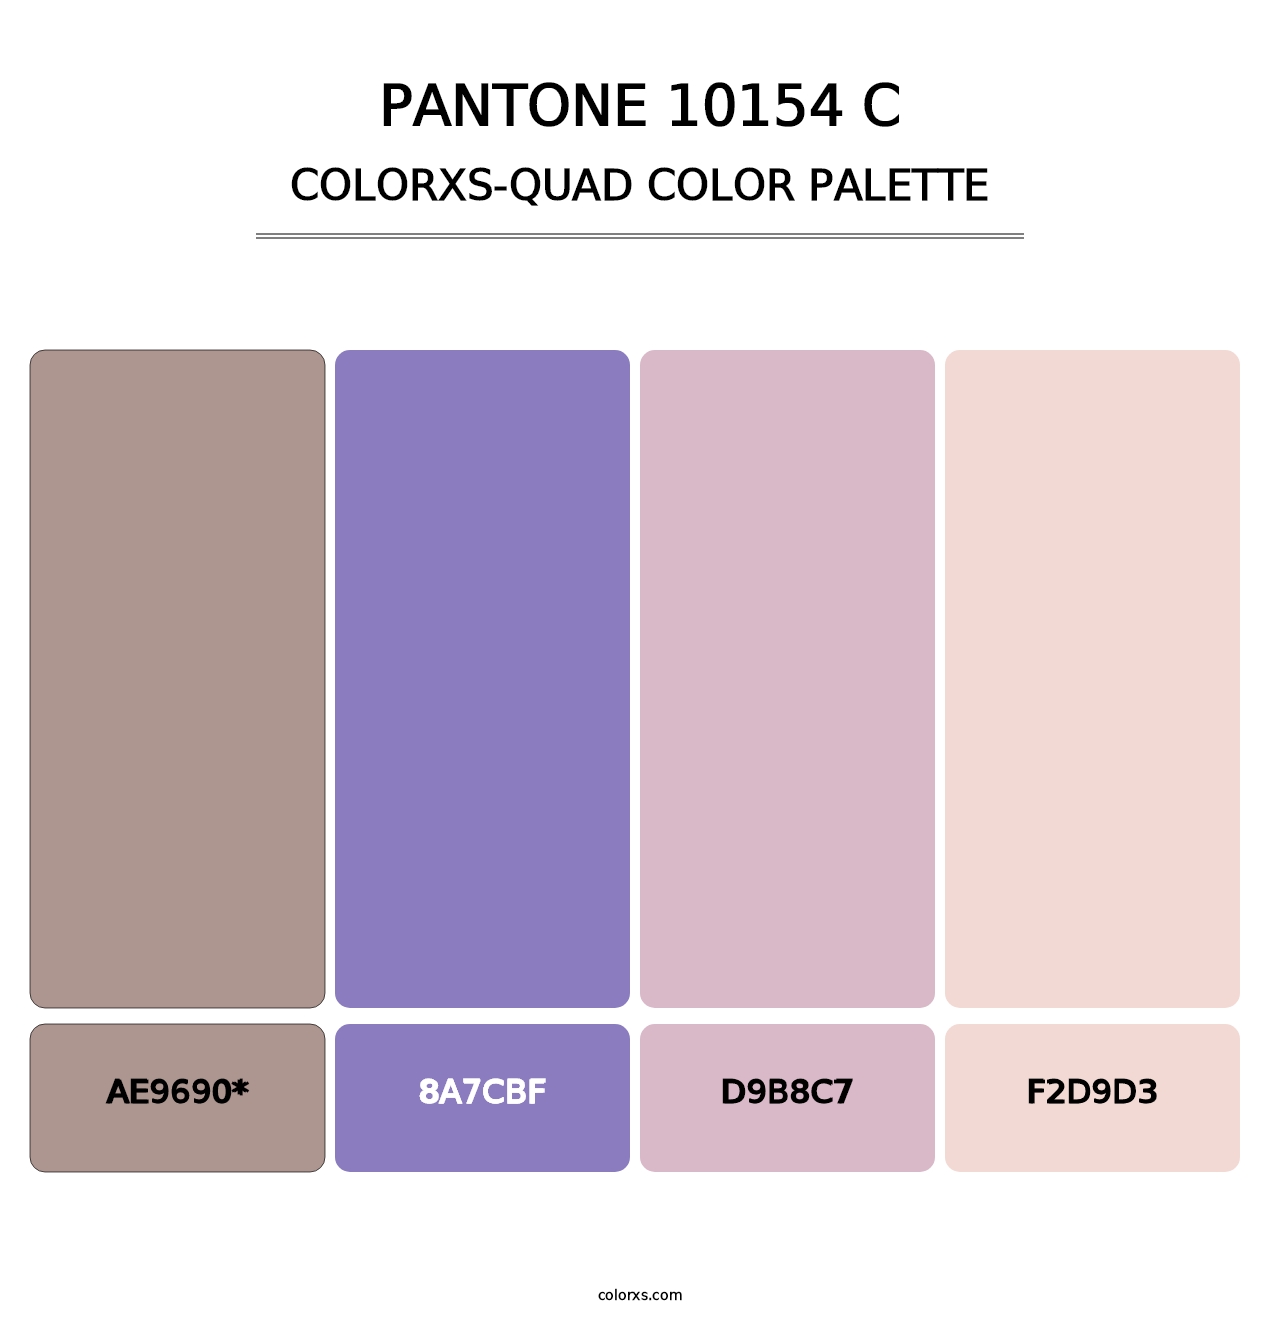 PANTONE 10154 C - Colorxs Quad Palette